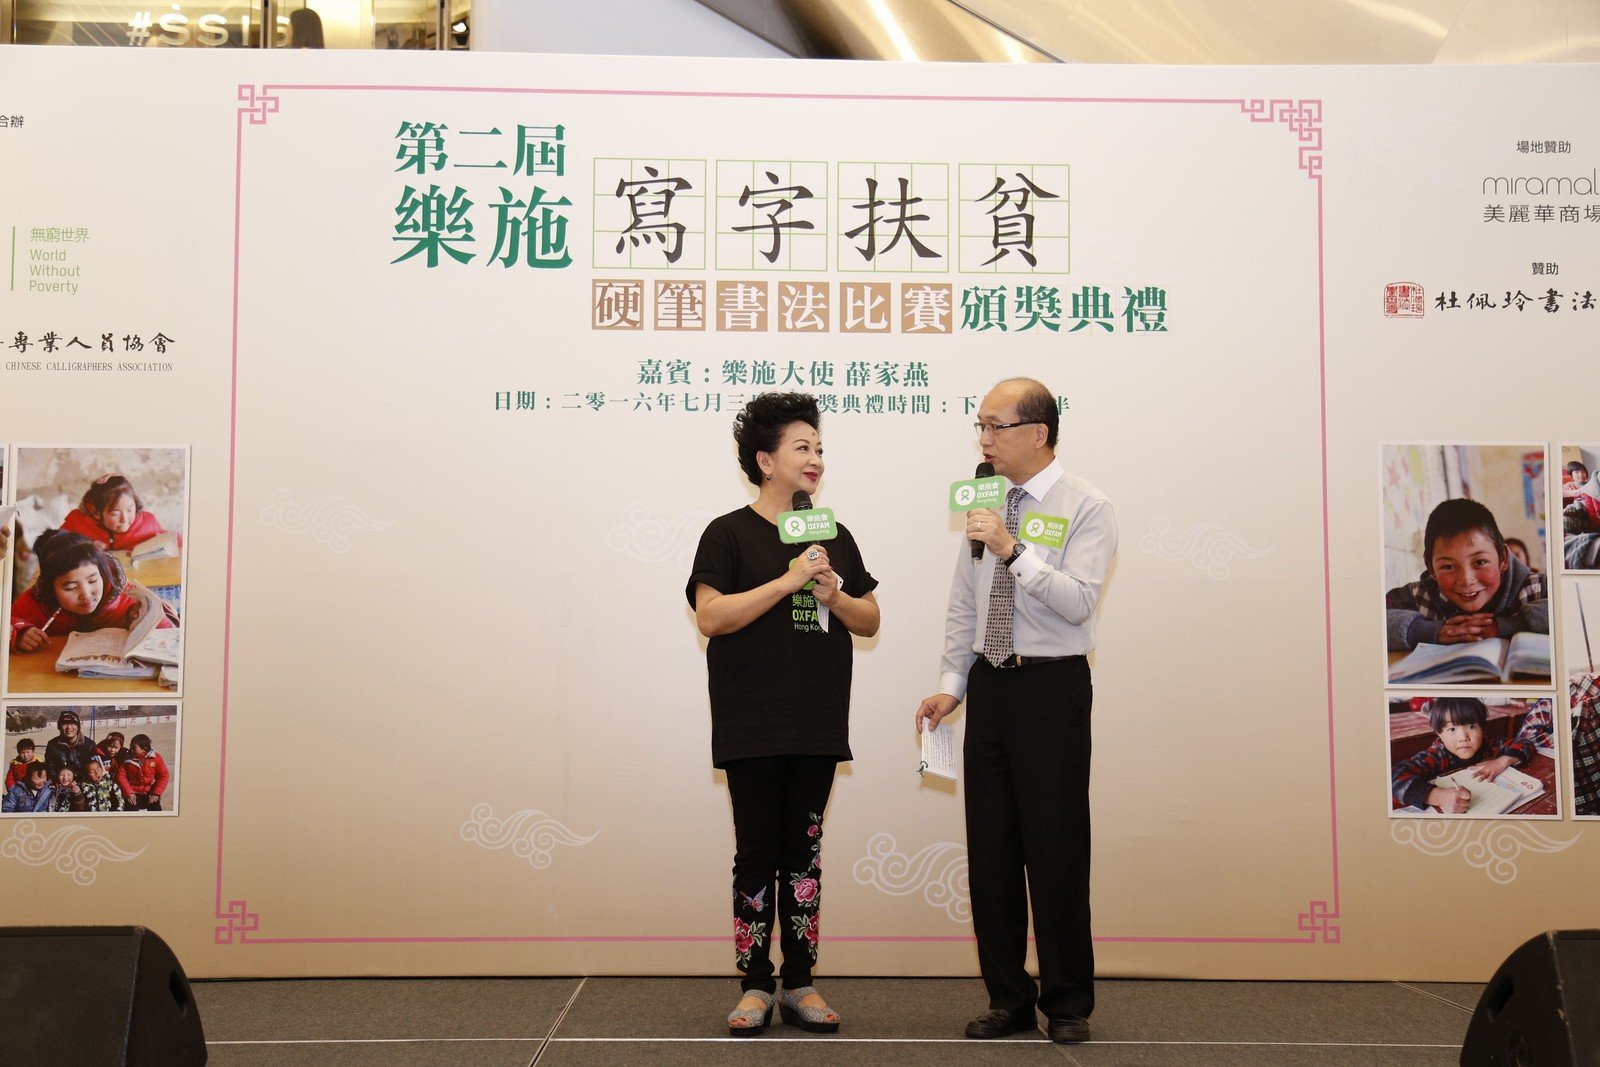 乐施大使薛家燕与香港书法专业人员协会主席雷超荣(右)真情对话，分享执笔写字的乐趣及好处